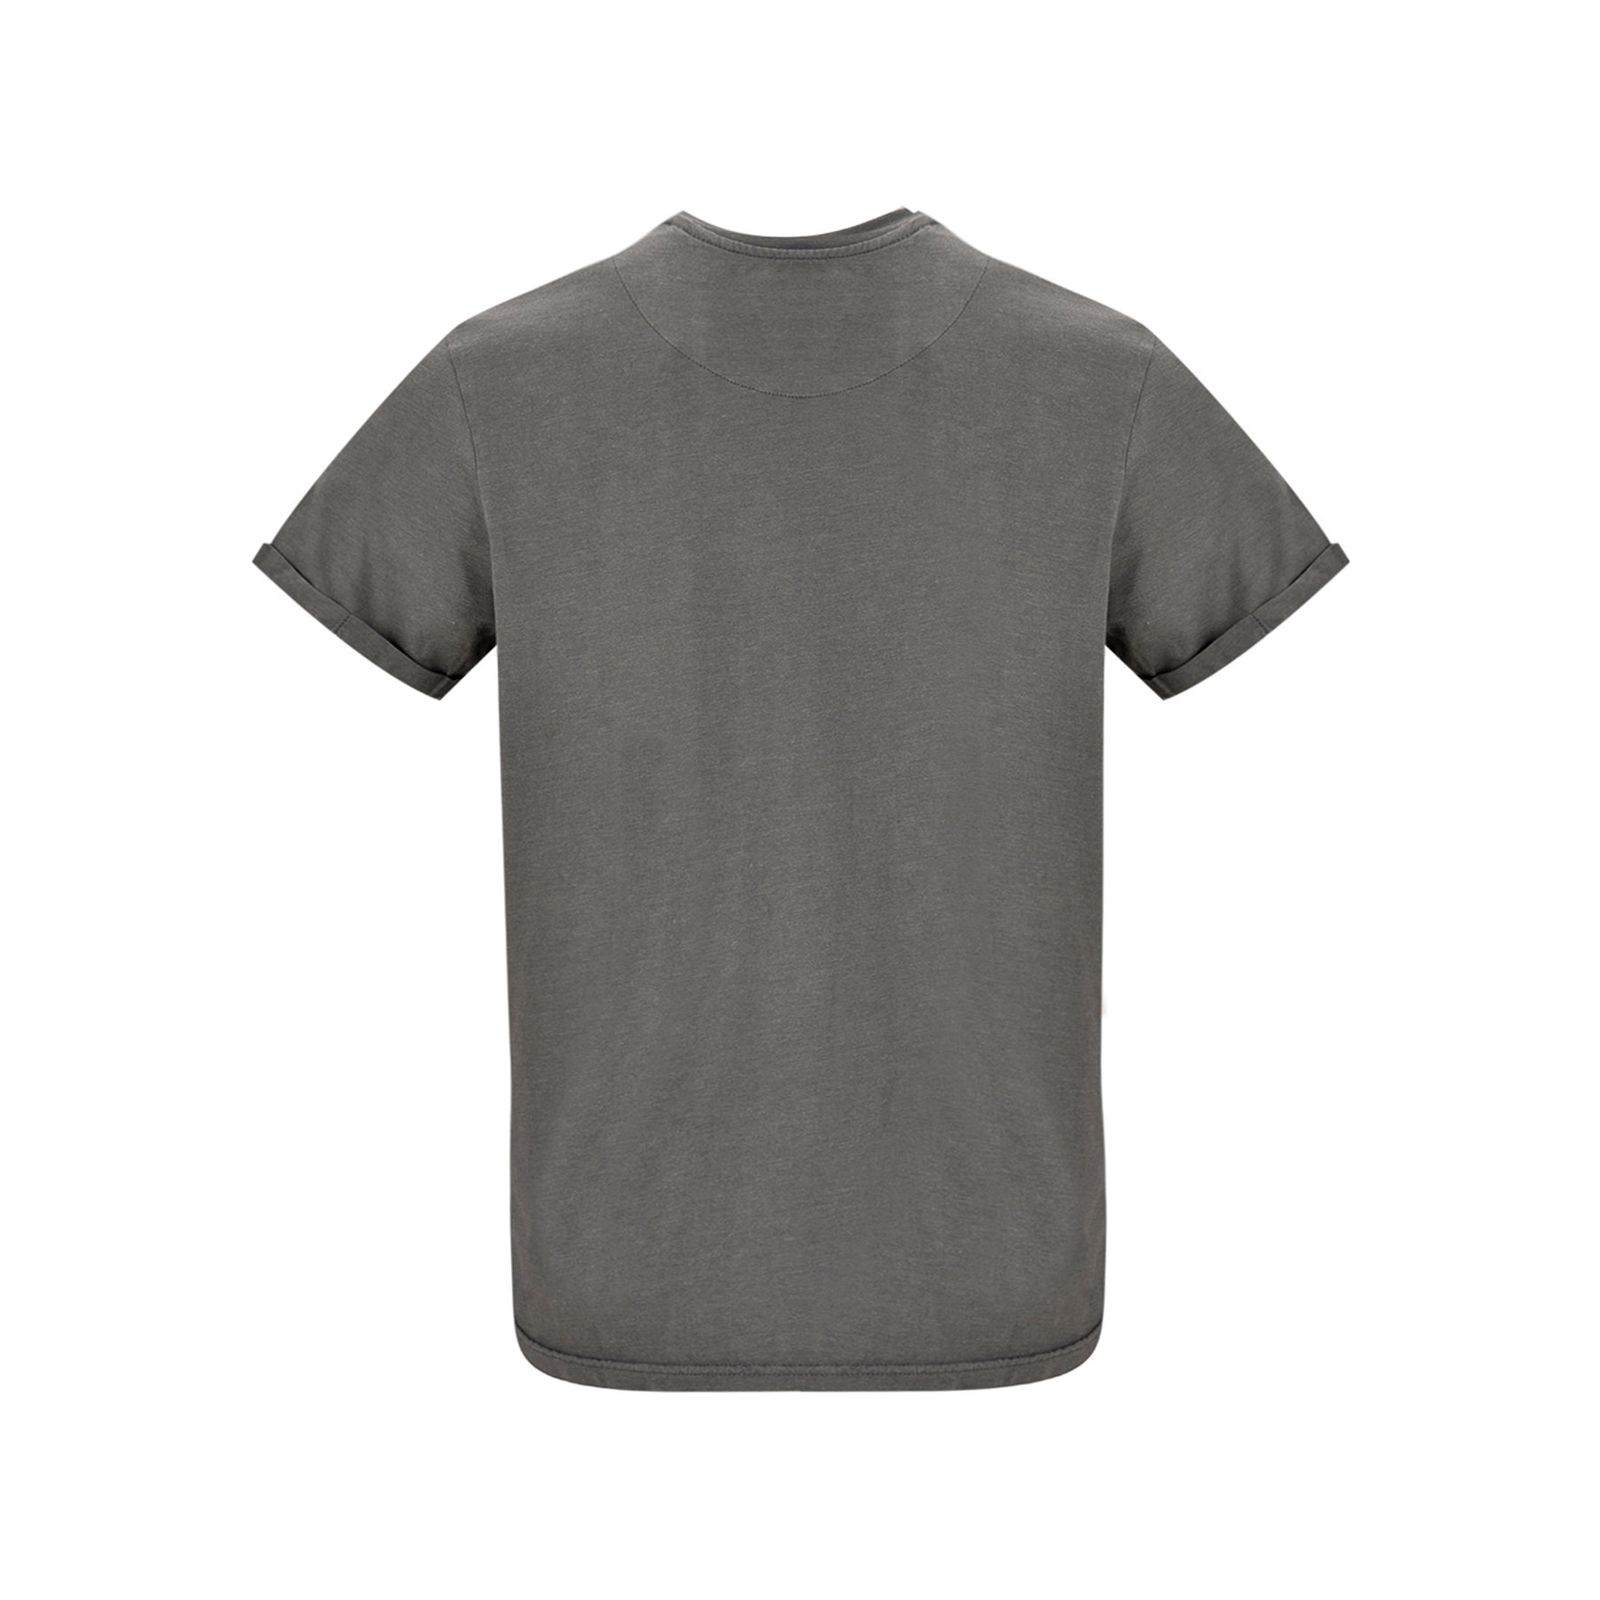 تی شرت آستین کوتاه مردانه بادی اسپینر مدل 4370 کد 1 رنگ طوسي -  - 3